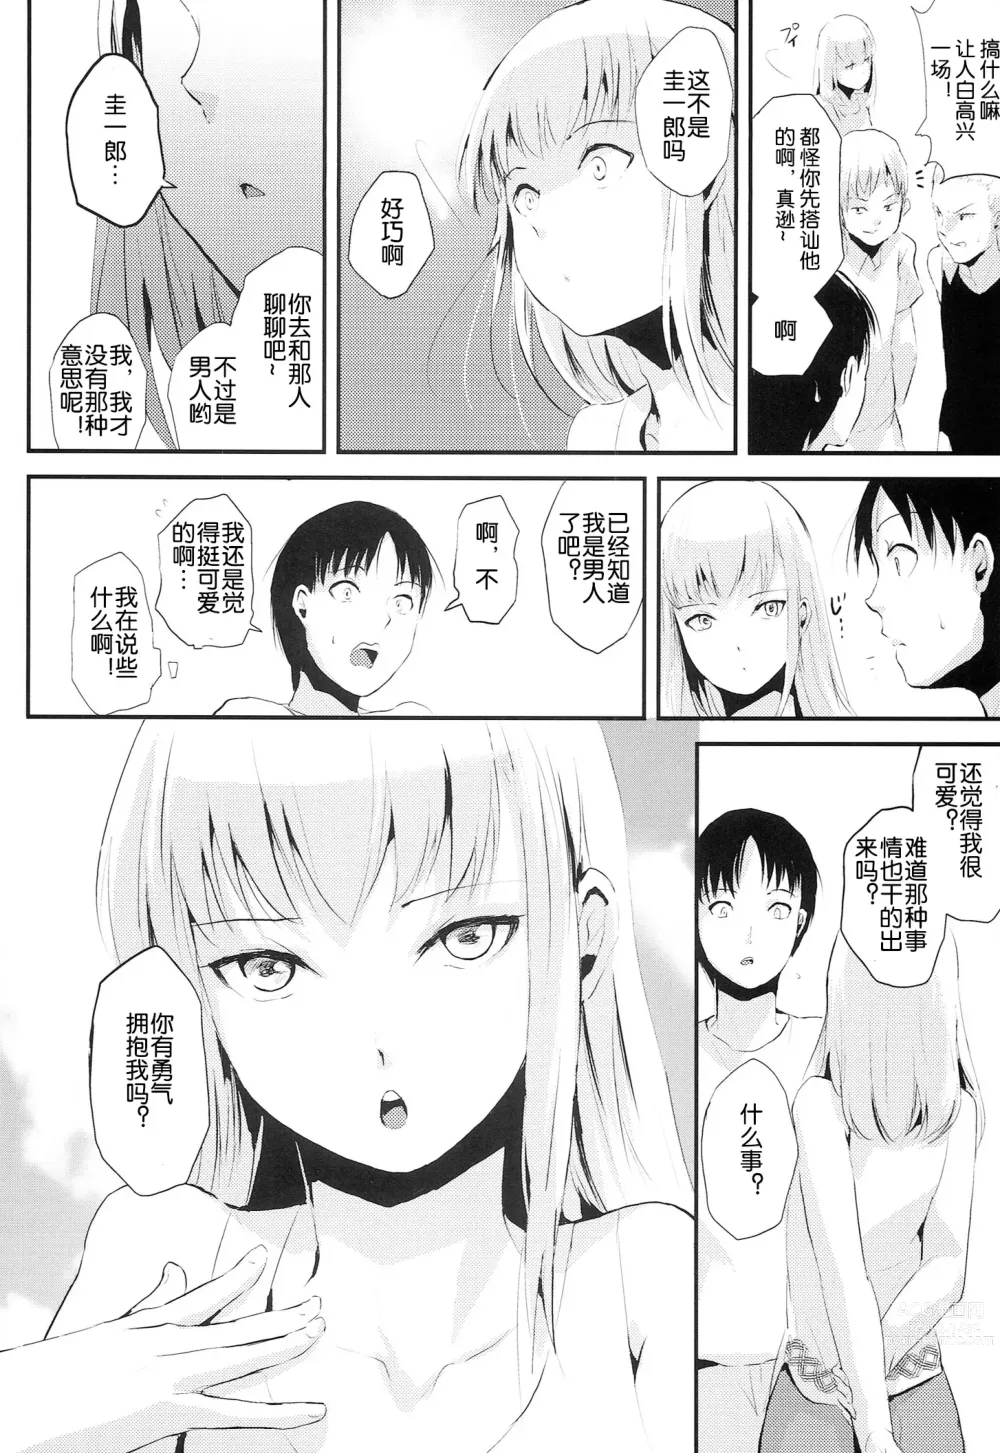 Page 6 of manga Natsu no Takenawa